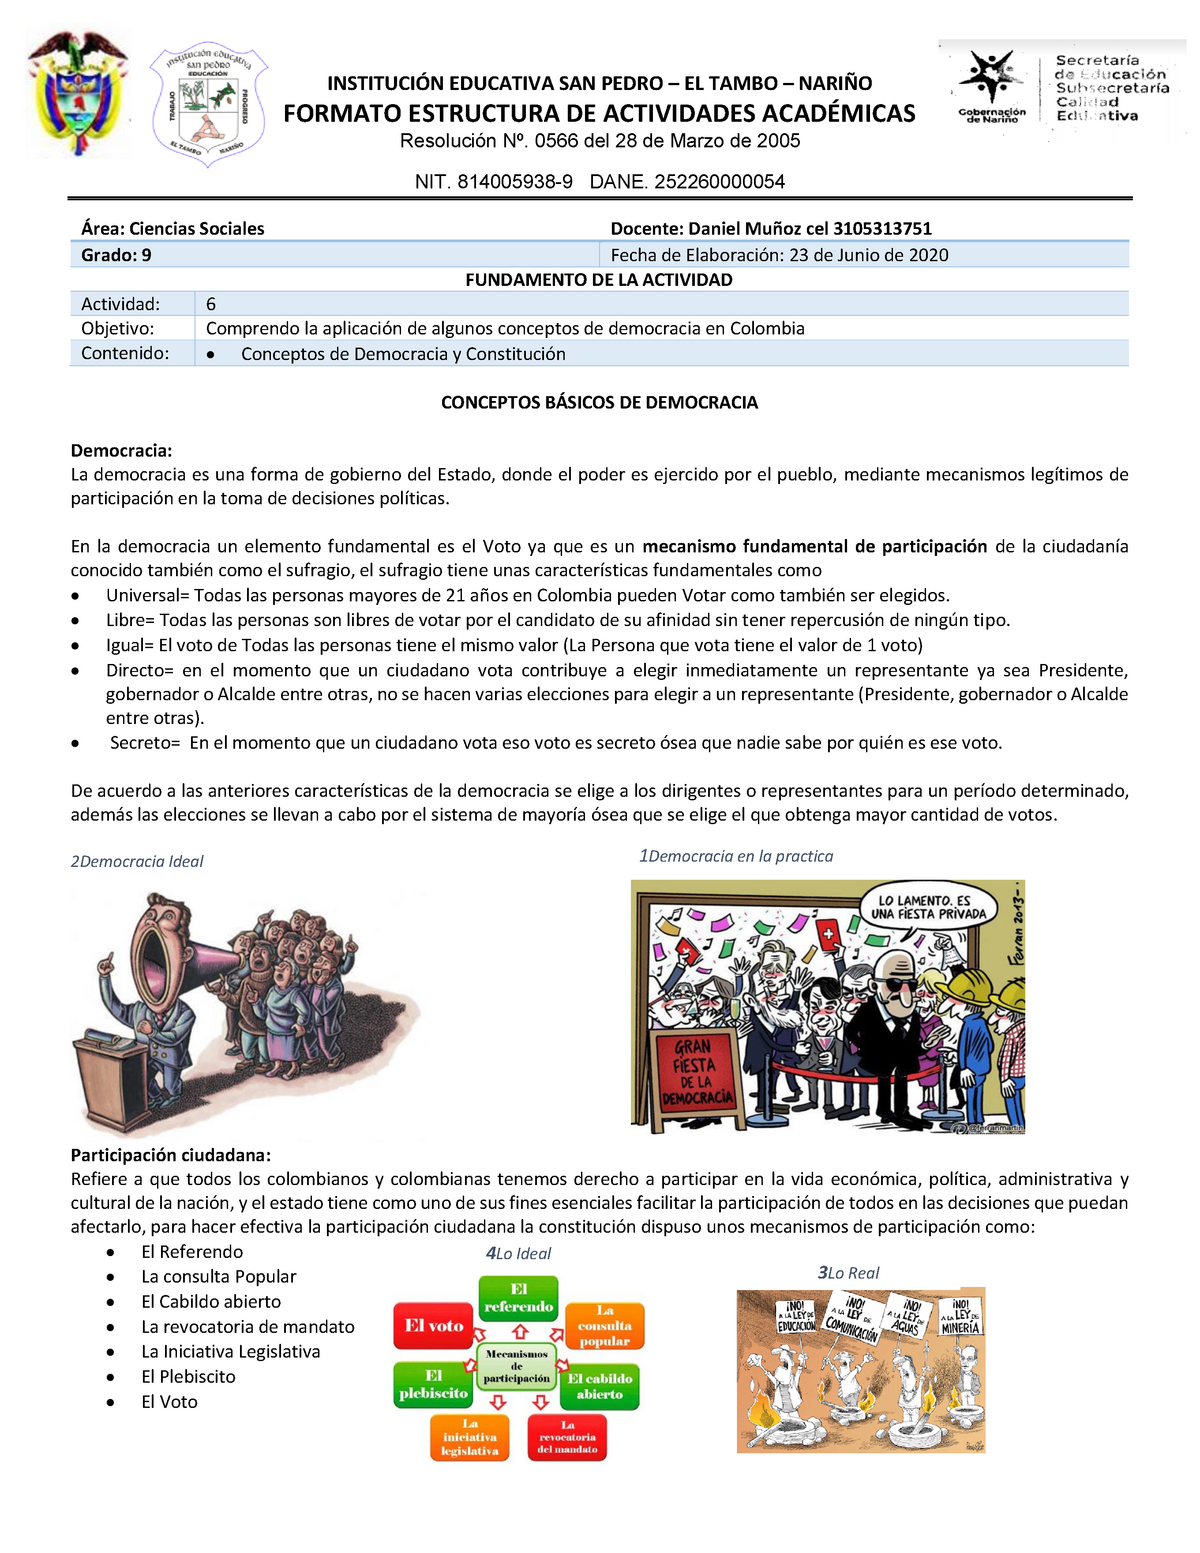 Concepto Democracia Guia 6 InstituciÓn Educativa San Pedro El Tambo NariÑo Formato 5176